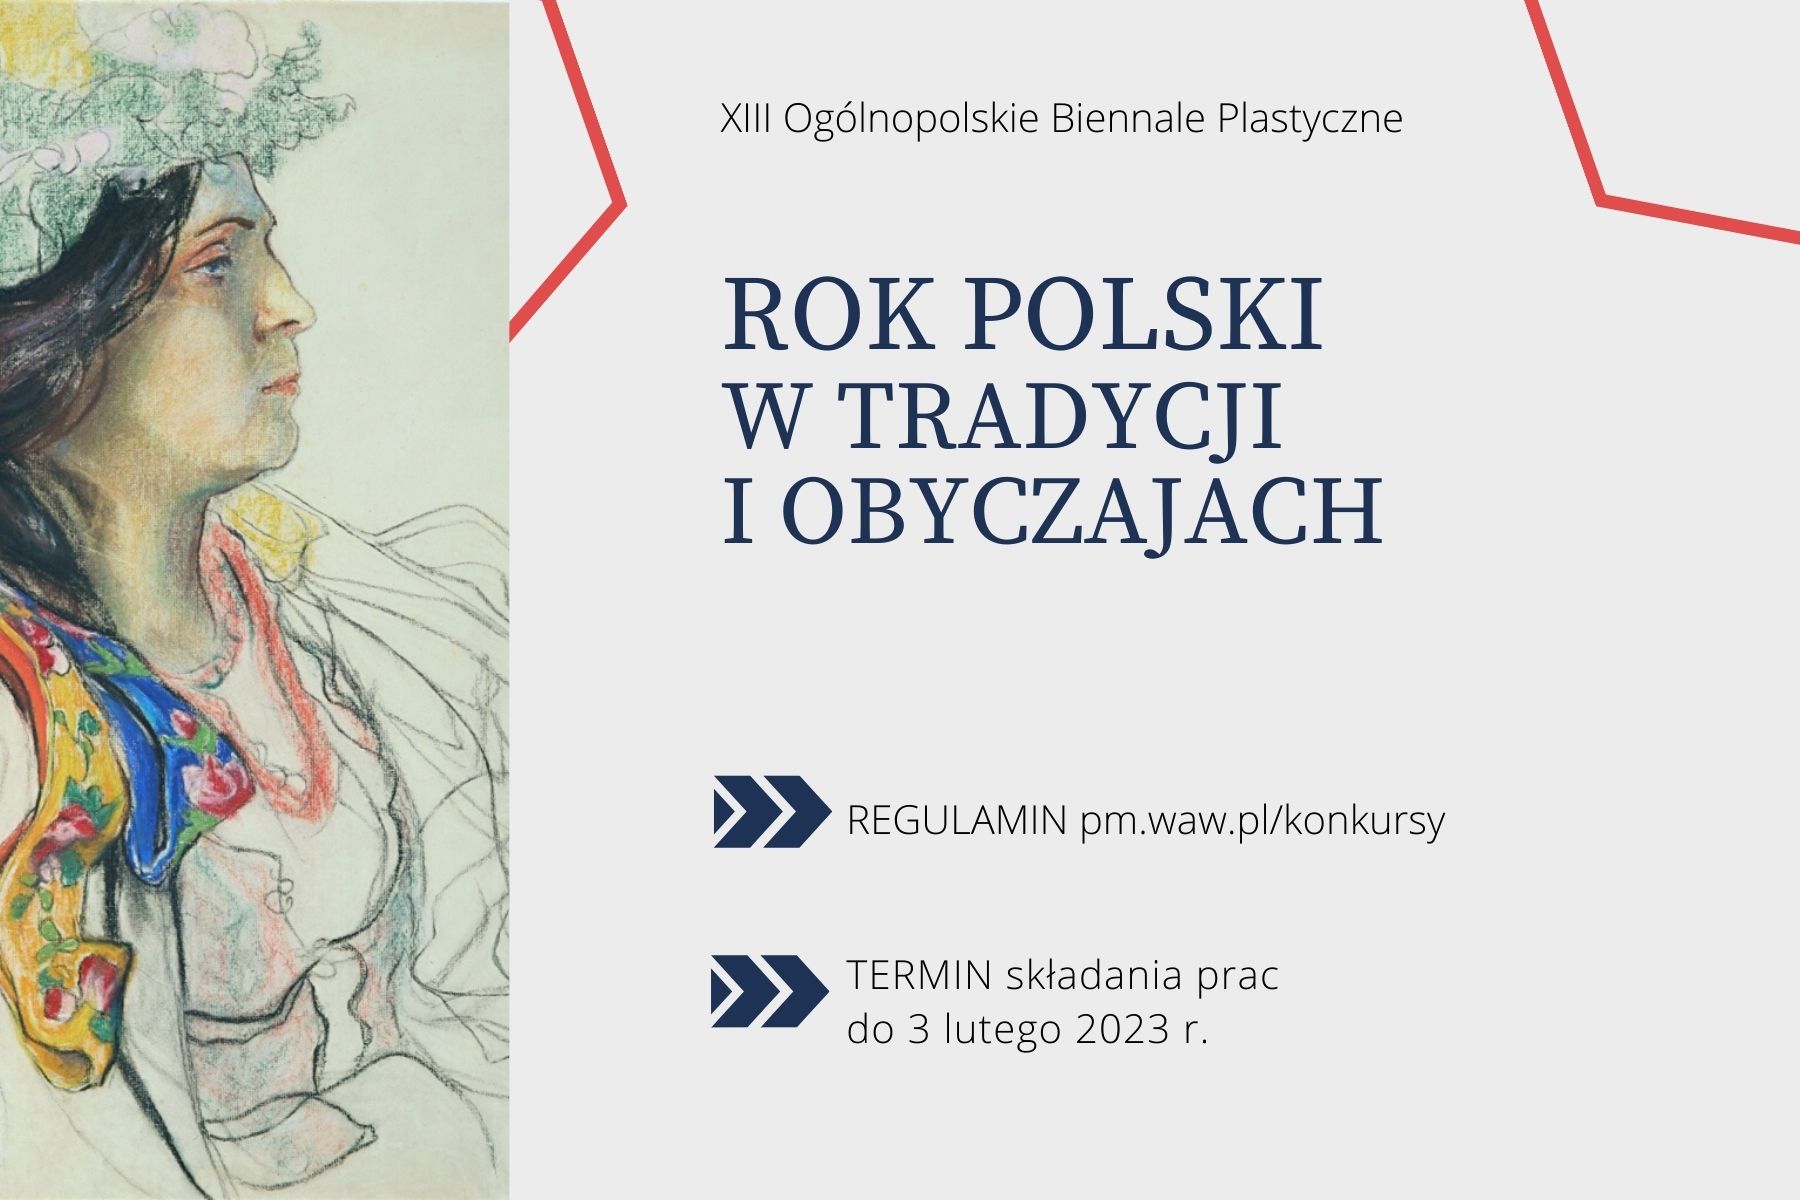 XIII Ogólnopolskie Biennale Plastyczne 